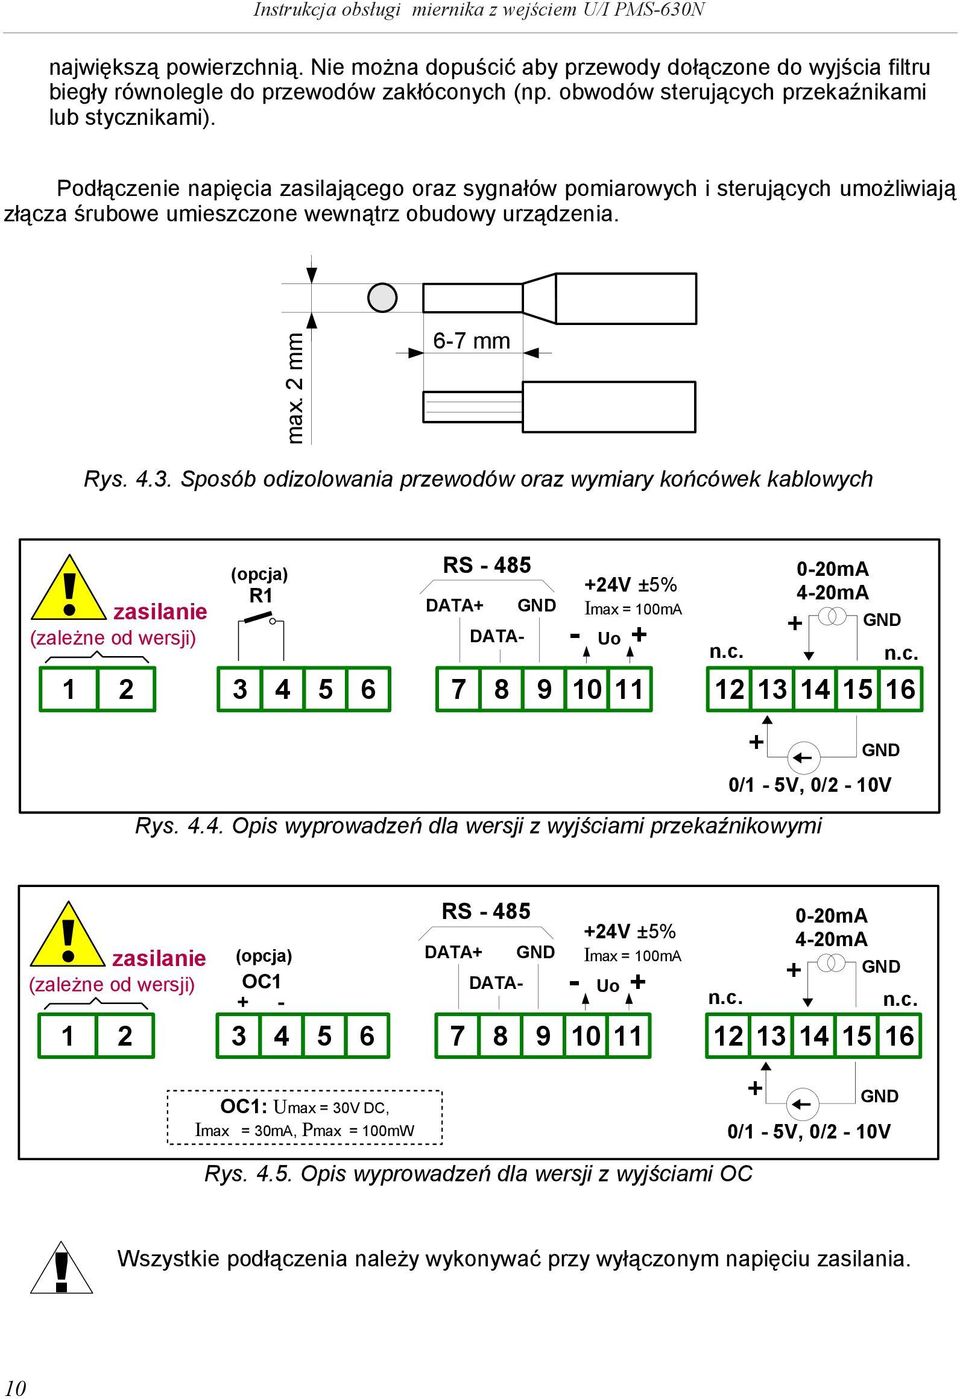 Sposób odzolowana przewodów oraz wymary końcówek kablowych zaslane (zależne od wersj) (opcja) R1 RS - 485 DATA+ GND 1 2 3 4 5 6 7 8 9 +24V ±5% Imax = 100mA - Uo + n.c. 10 11 12 13 14 15 16 Rys. 4.4. Ops wyprowadzeń dla wersj z wyjścam przekaźnkowym + 0-20mA 4-20mA + GND GND 0/1-5V, 0/2-10V n.